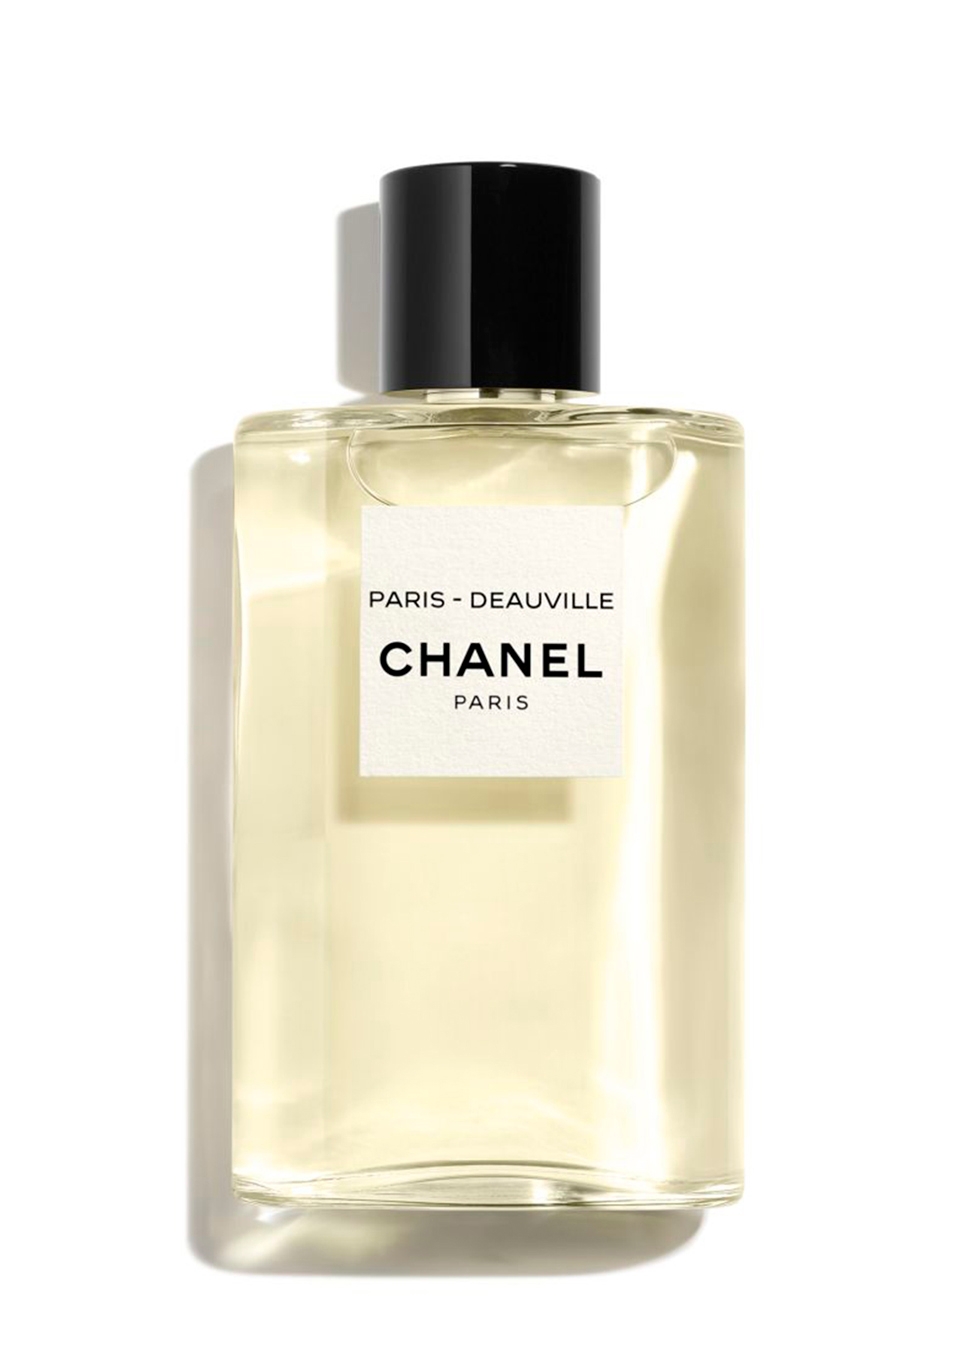 CHANEL PARIS - DEAUVILLE ~ Eau De Toilette Spray 125ml - Harvey Nichols